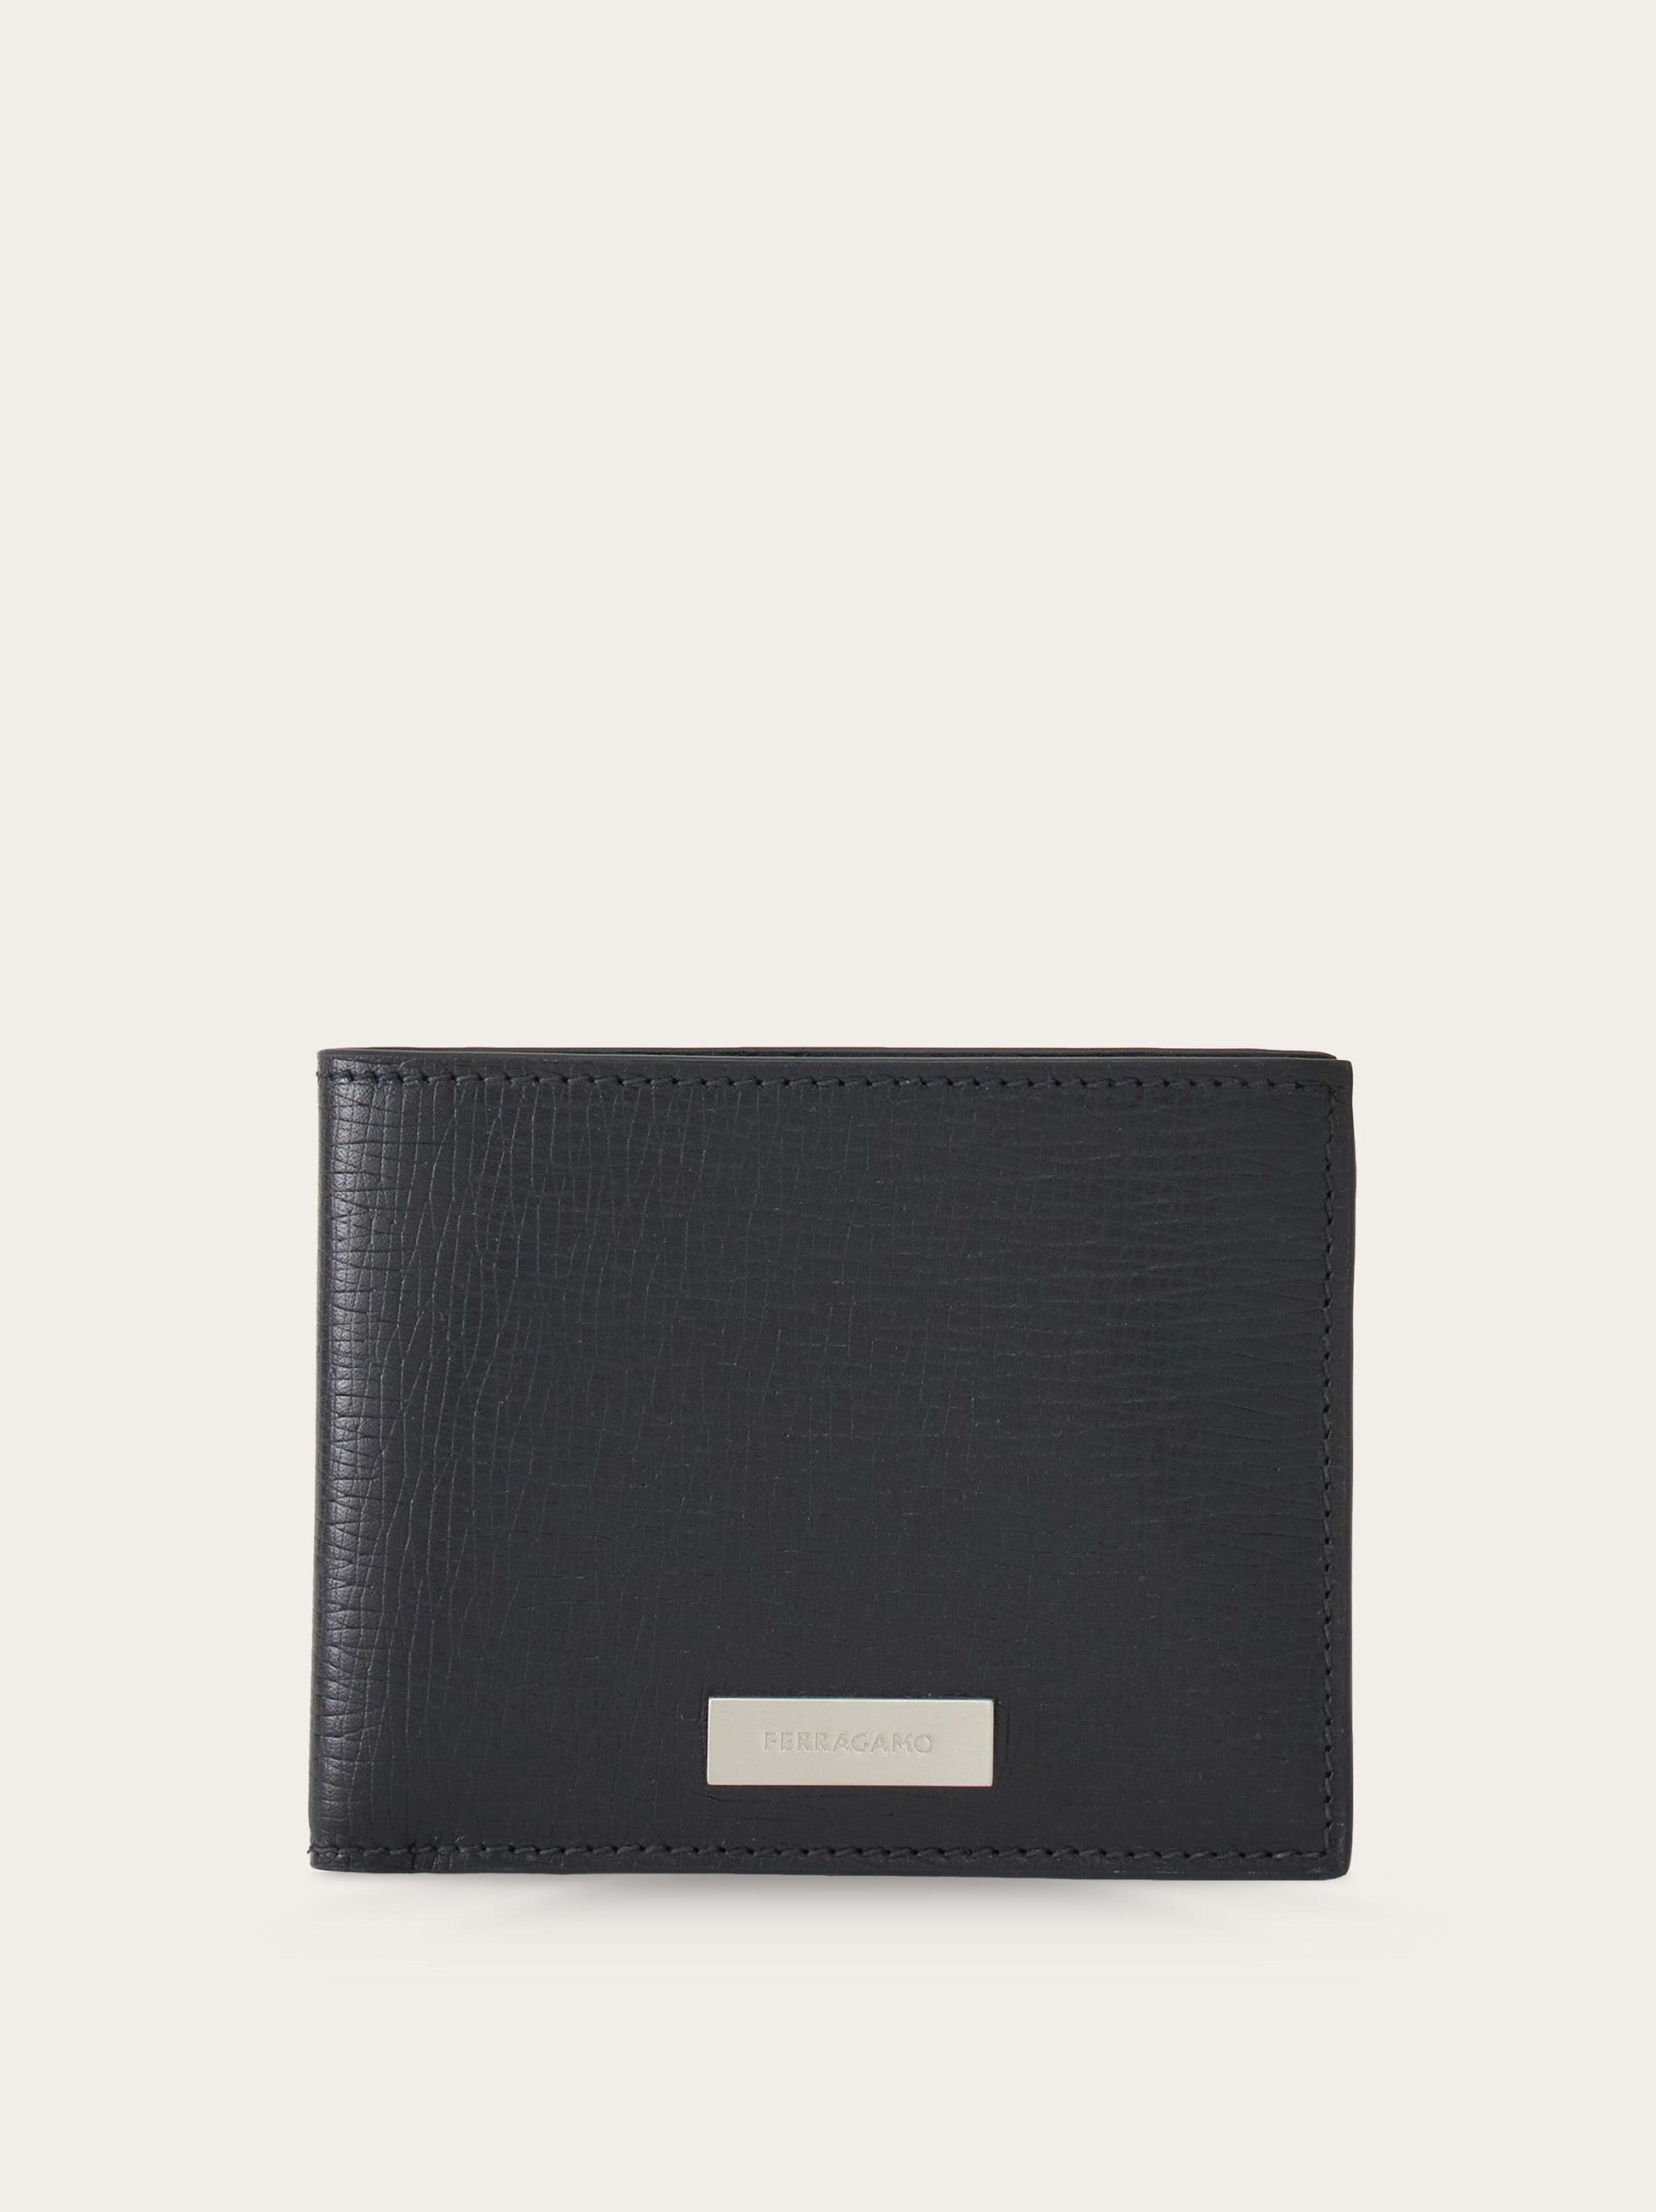 Wallet with custom metal plate - 1